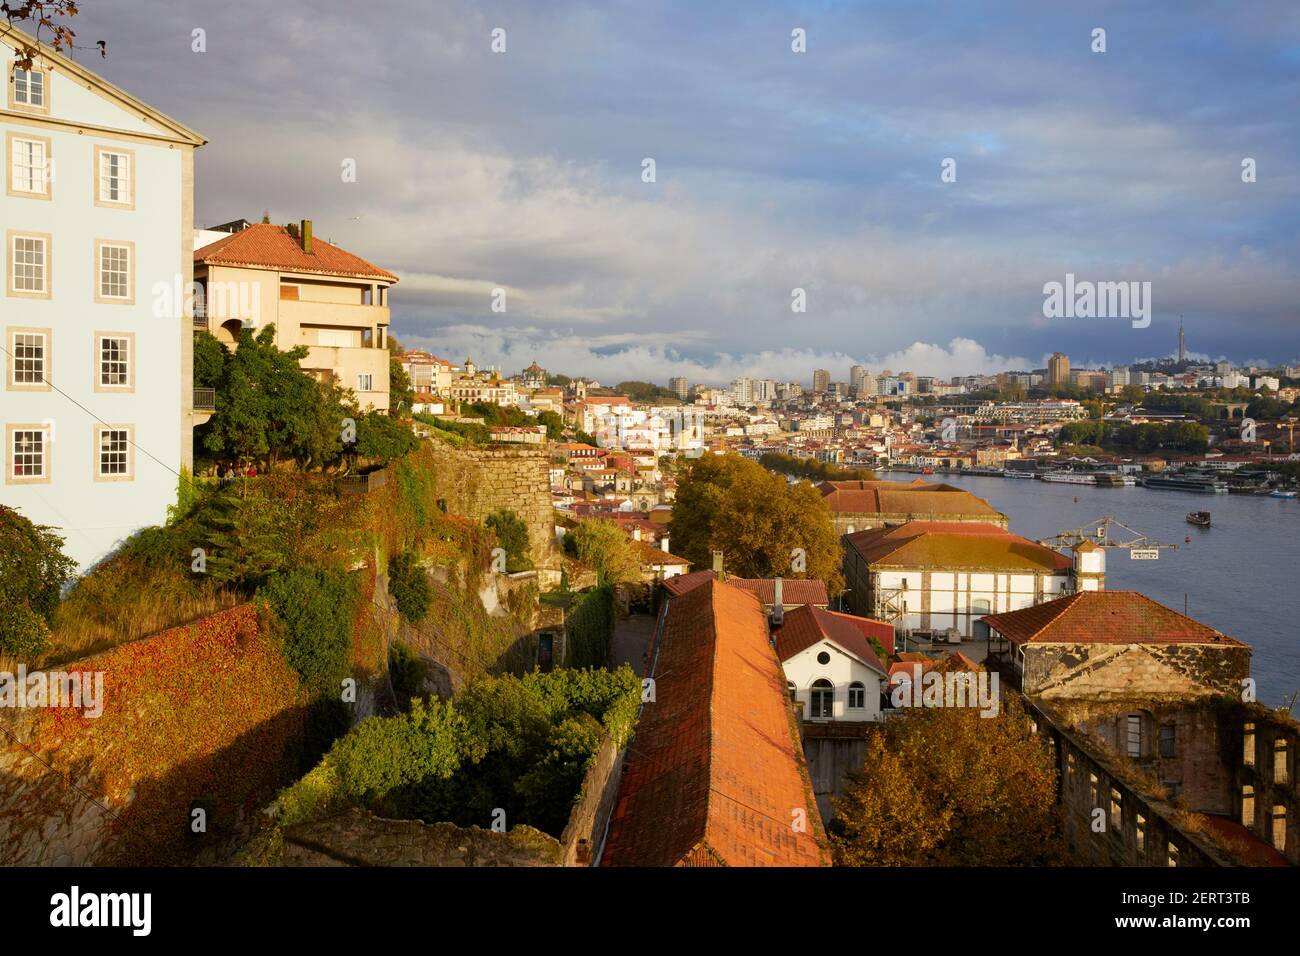 Vista de la ciudad de Oporto y el río Duero, Oporto, Portugal Foto de stock